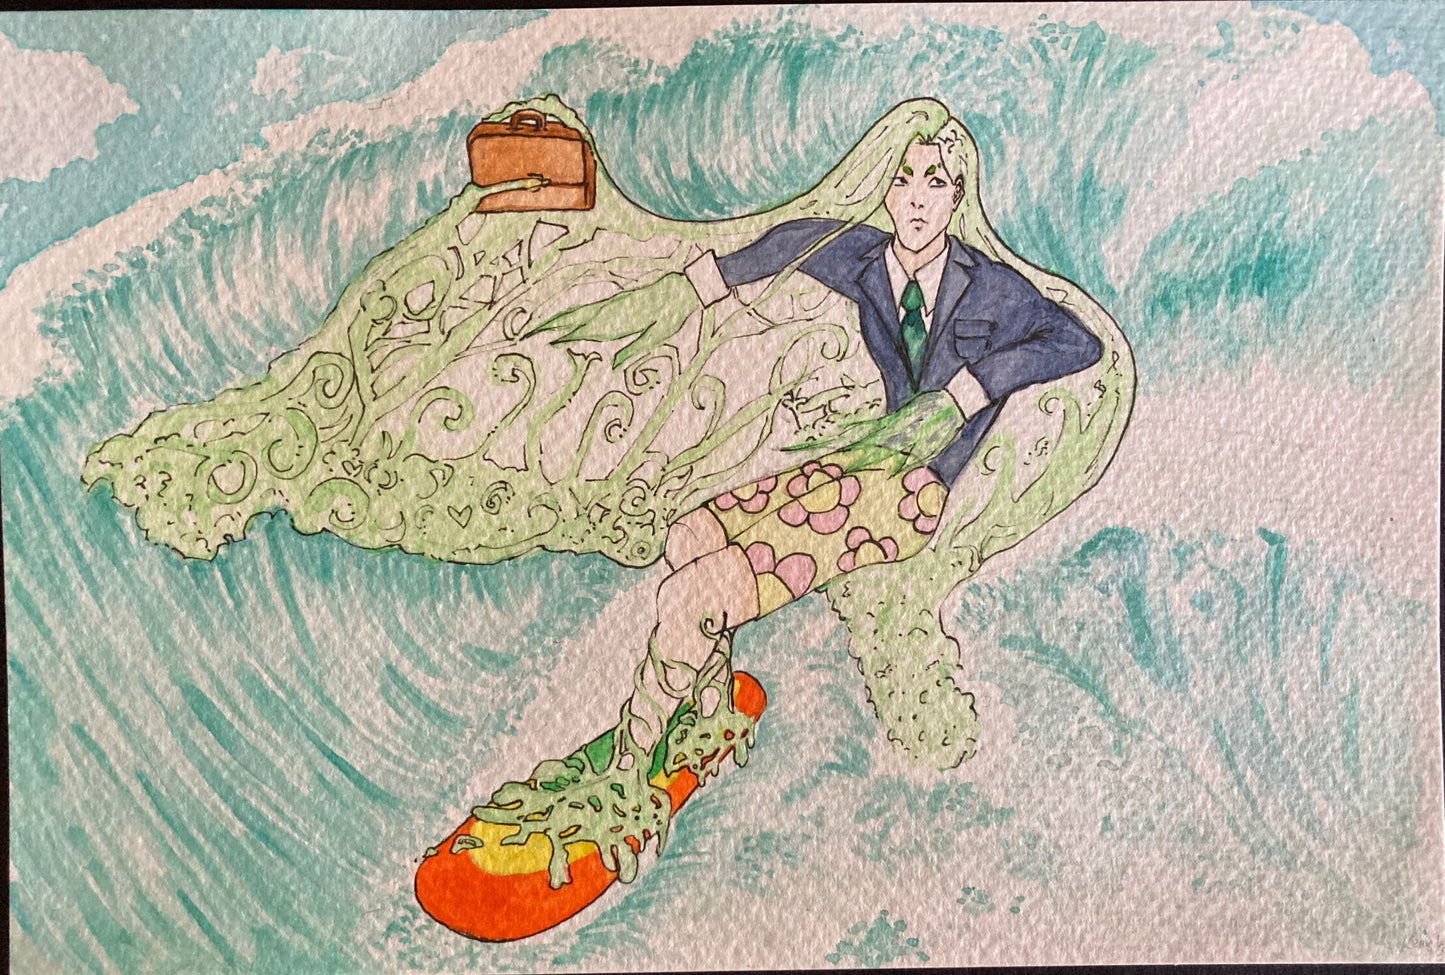 Slime Surfer